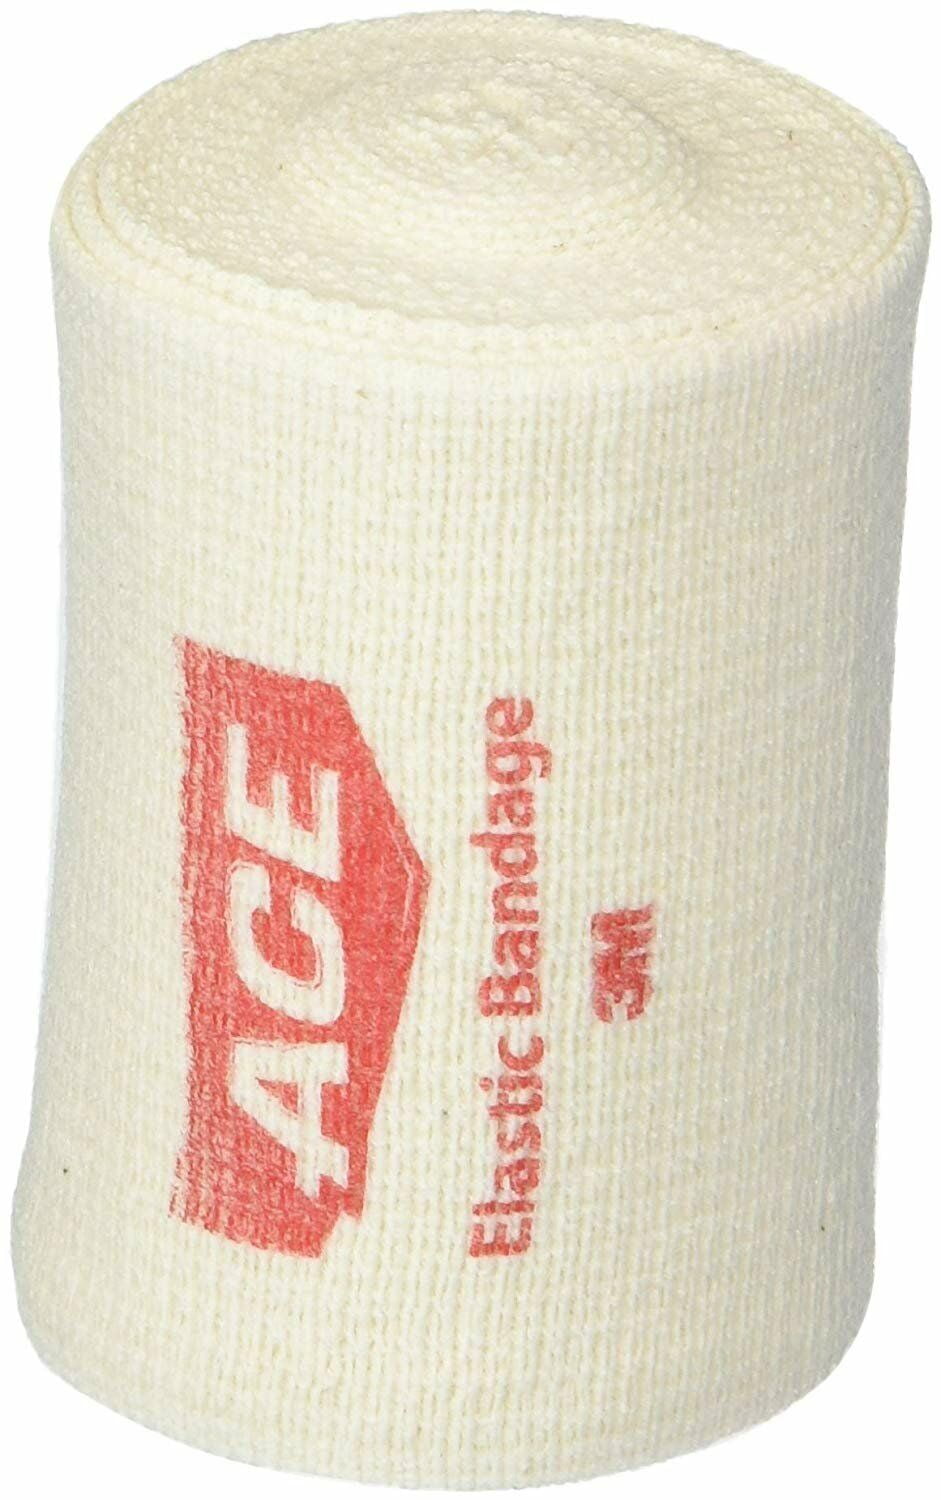 Ace Bandage Wrap Knee